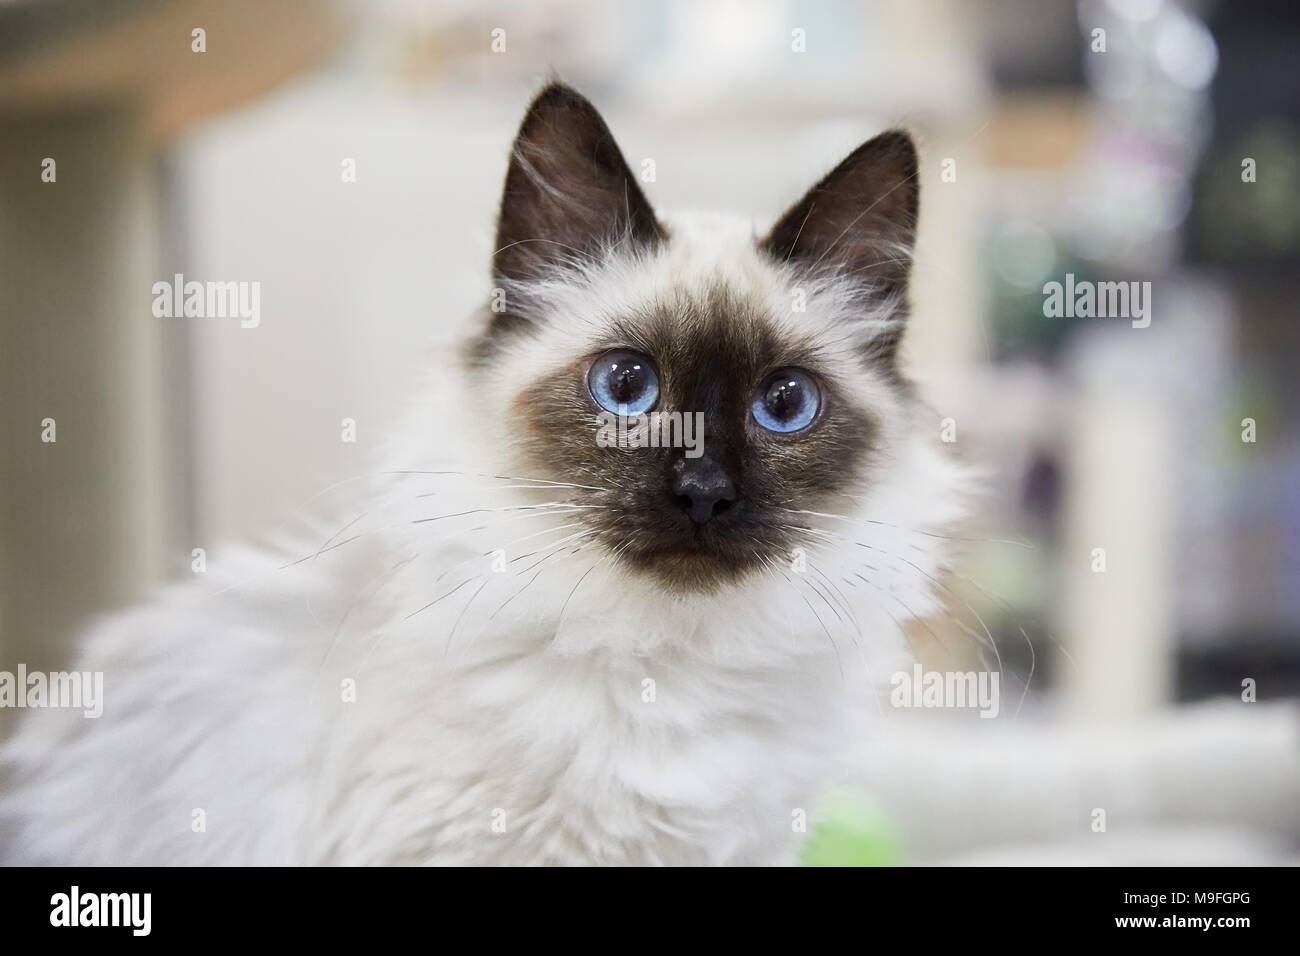 Bastante blancas mullidas gato siamés o punto de estanquidad con ojos azules sentarnos adentro mirando fijamente a la cámara Foto de stock